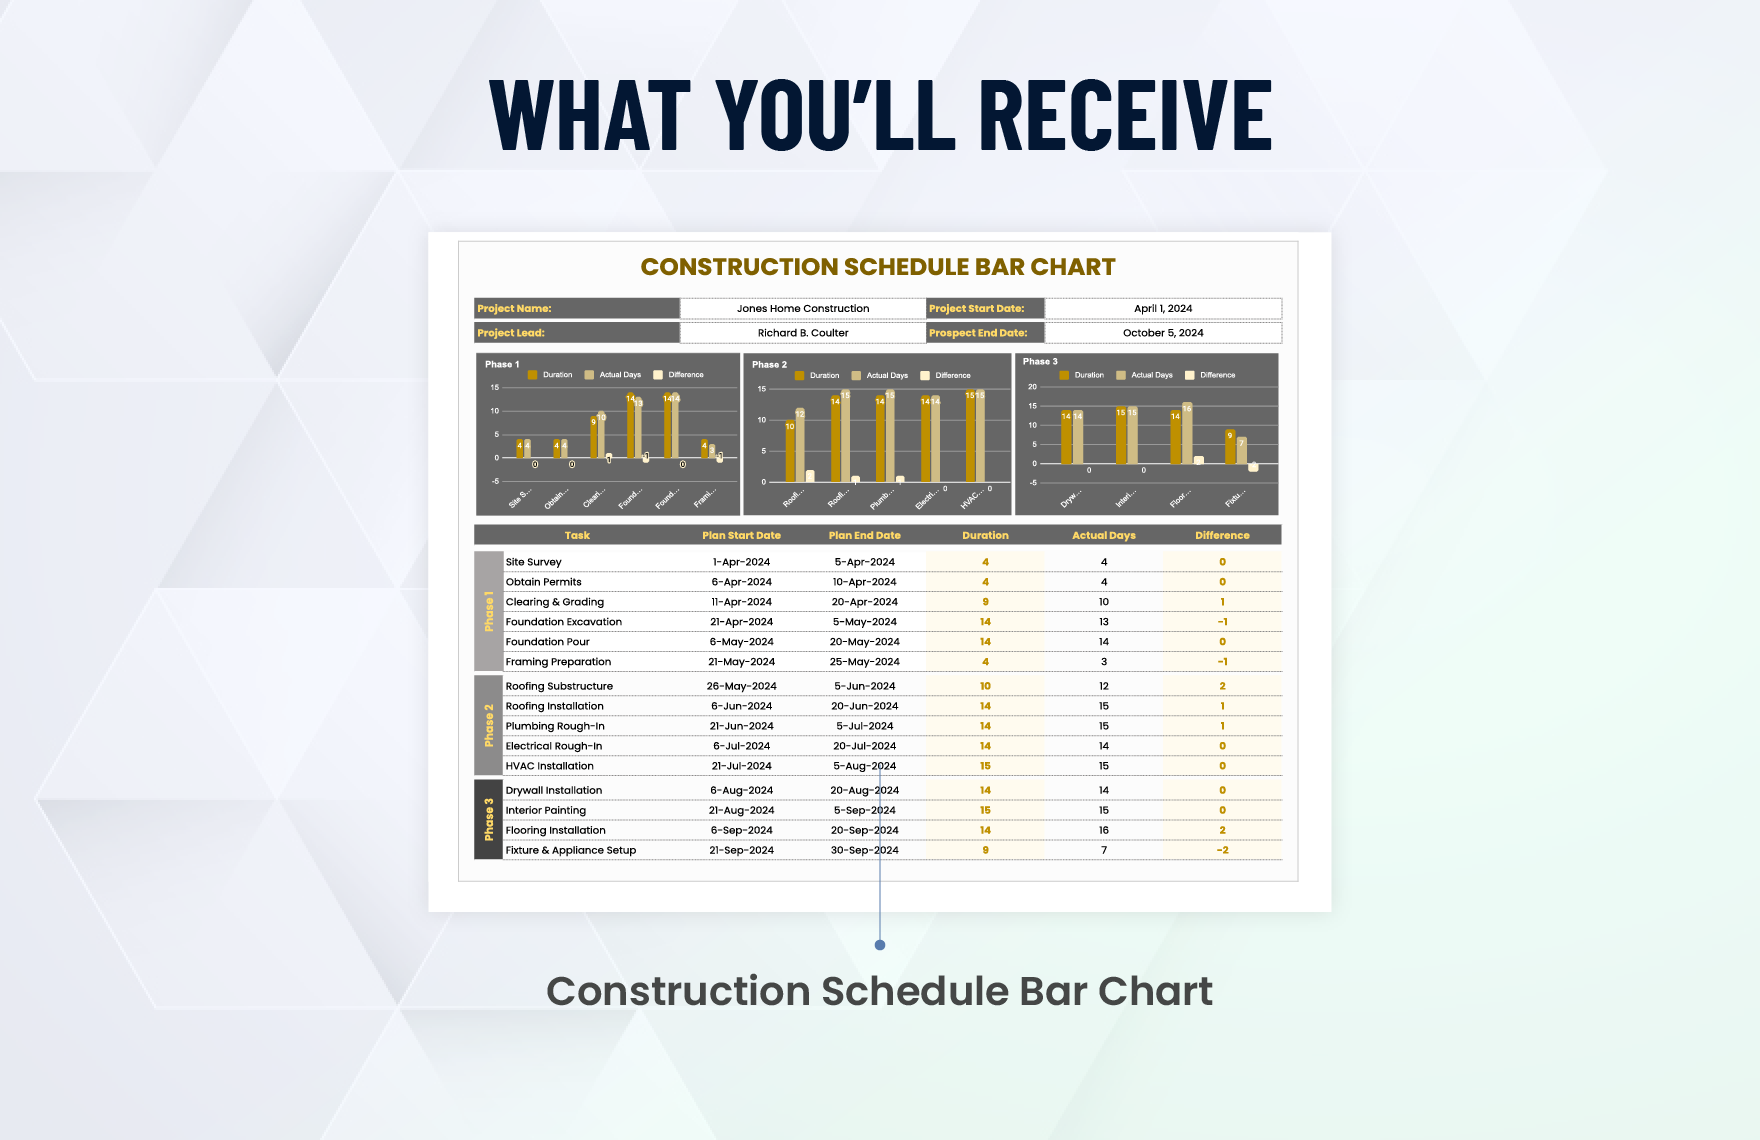 Construction Schedule Bar Chart Template